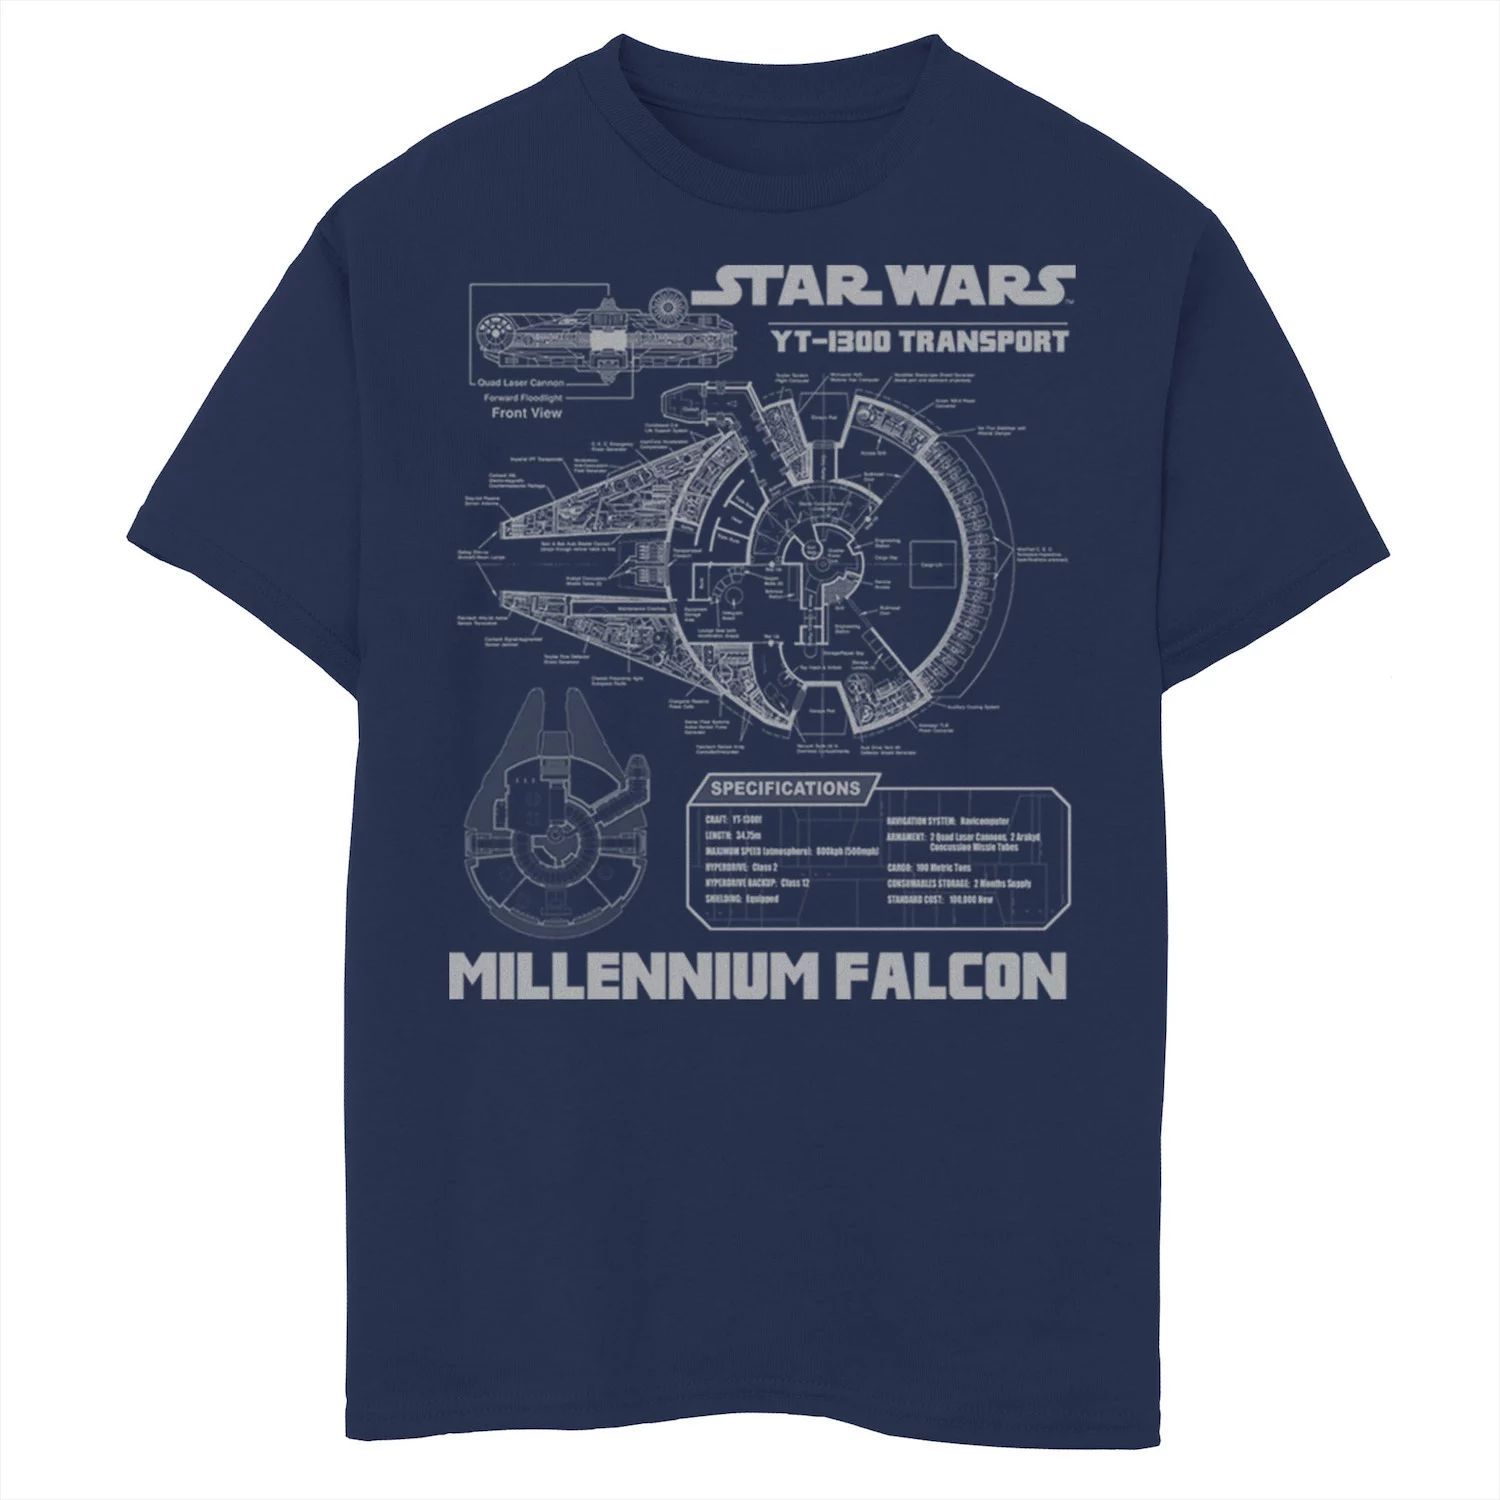 Серая футболка с рисунком «Сокол тысячелетия» для мальчиков 8–20 лет «Звездные войны» Star Wars футболка с рисунком сокол тысячелетия для мальчиков 8–20 лет star wars